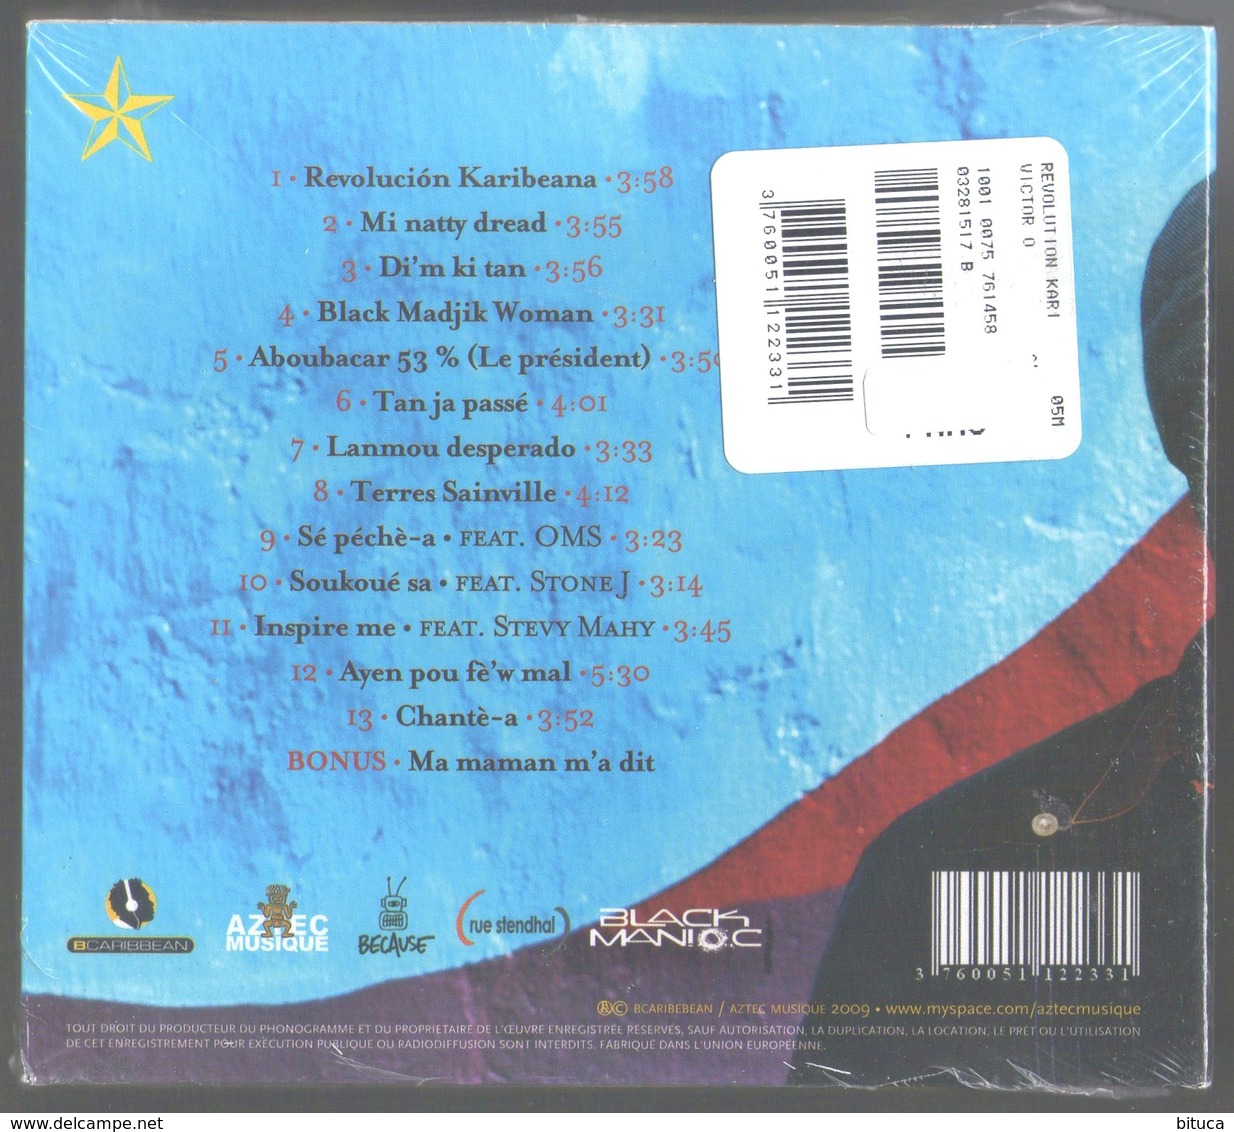 CD 14 TITRES VICTOR O REVOLUCION KARIBEANA NEUF SOUS BLISTER & RARE - World Music